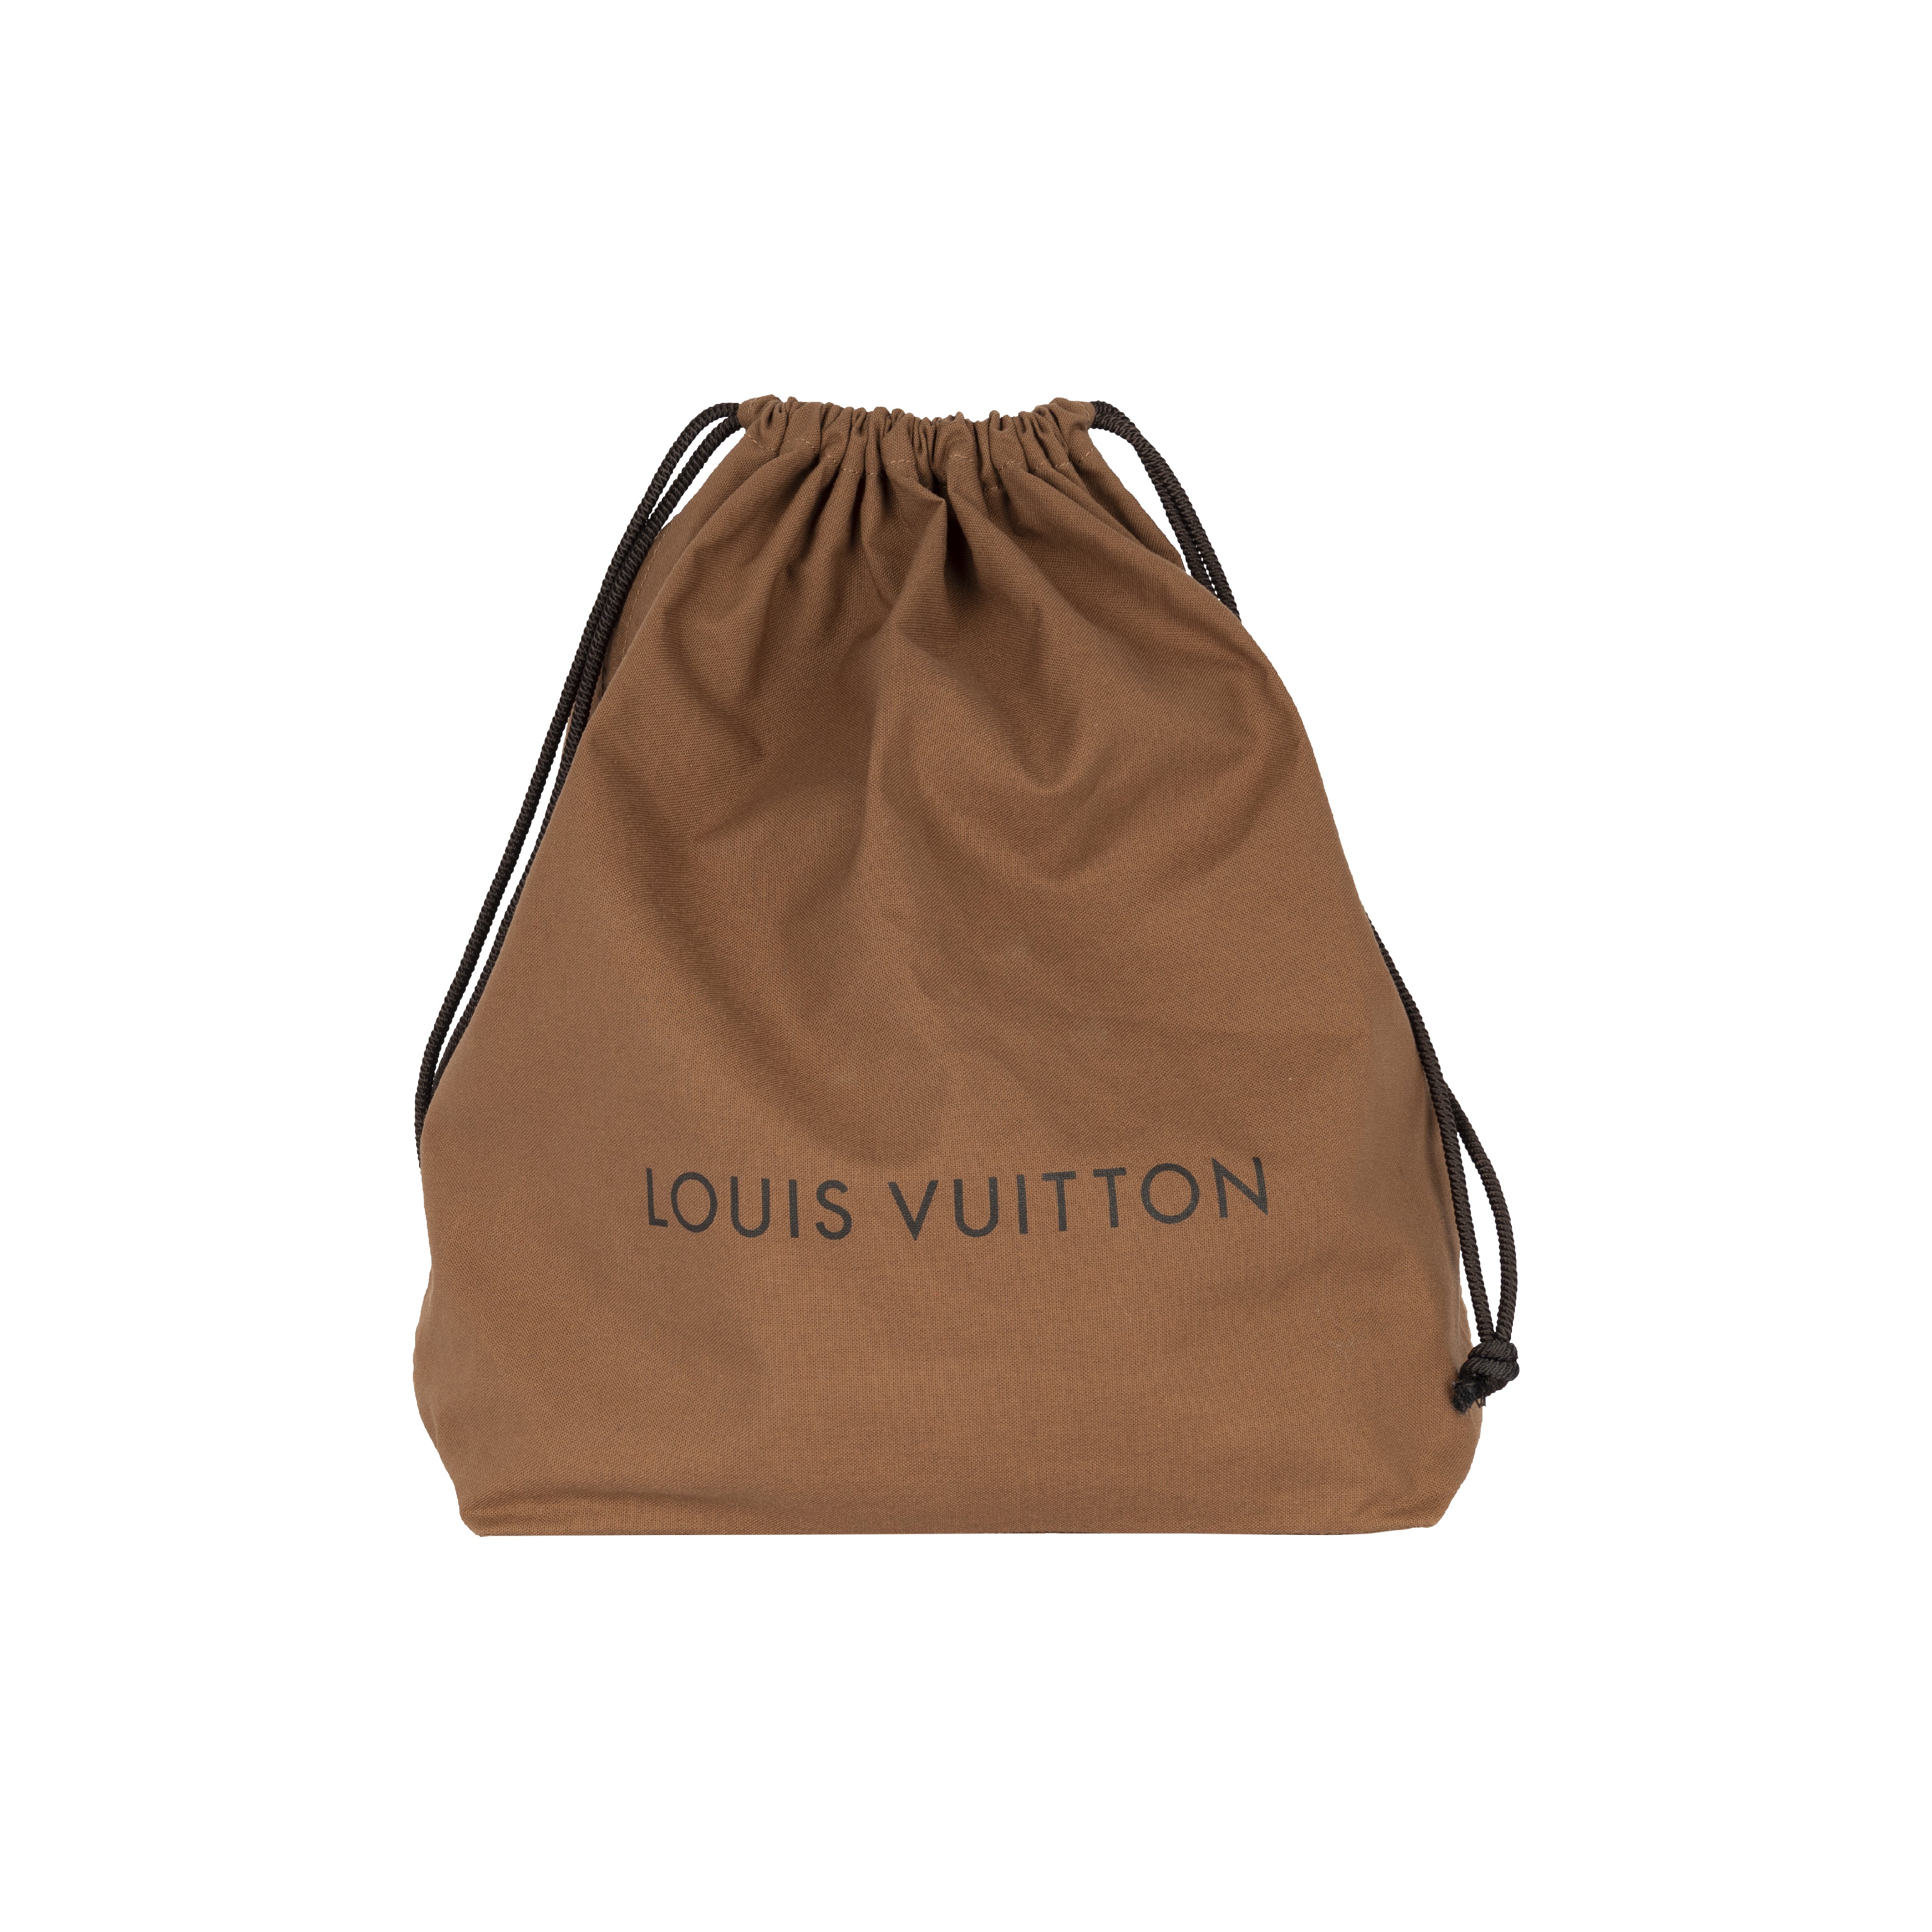 Louis Vuitton x Comme des Garçons Burned Holes Monogram Tote bag- '10s